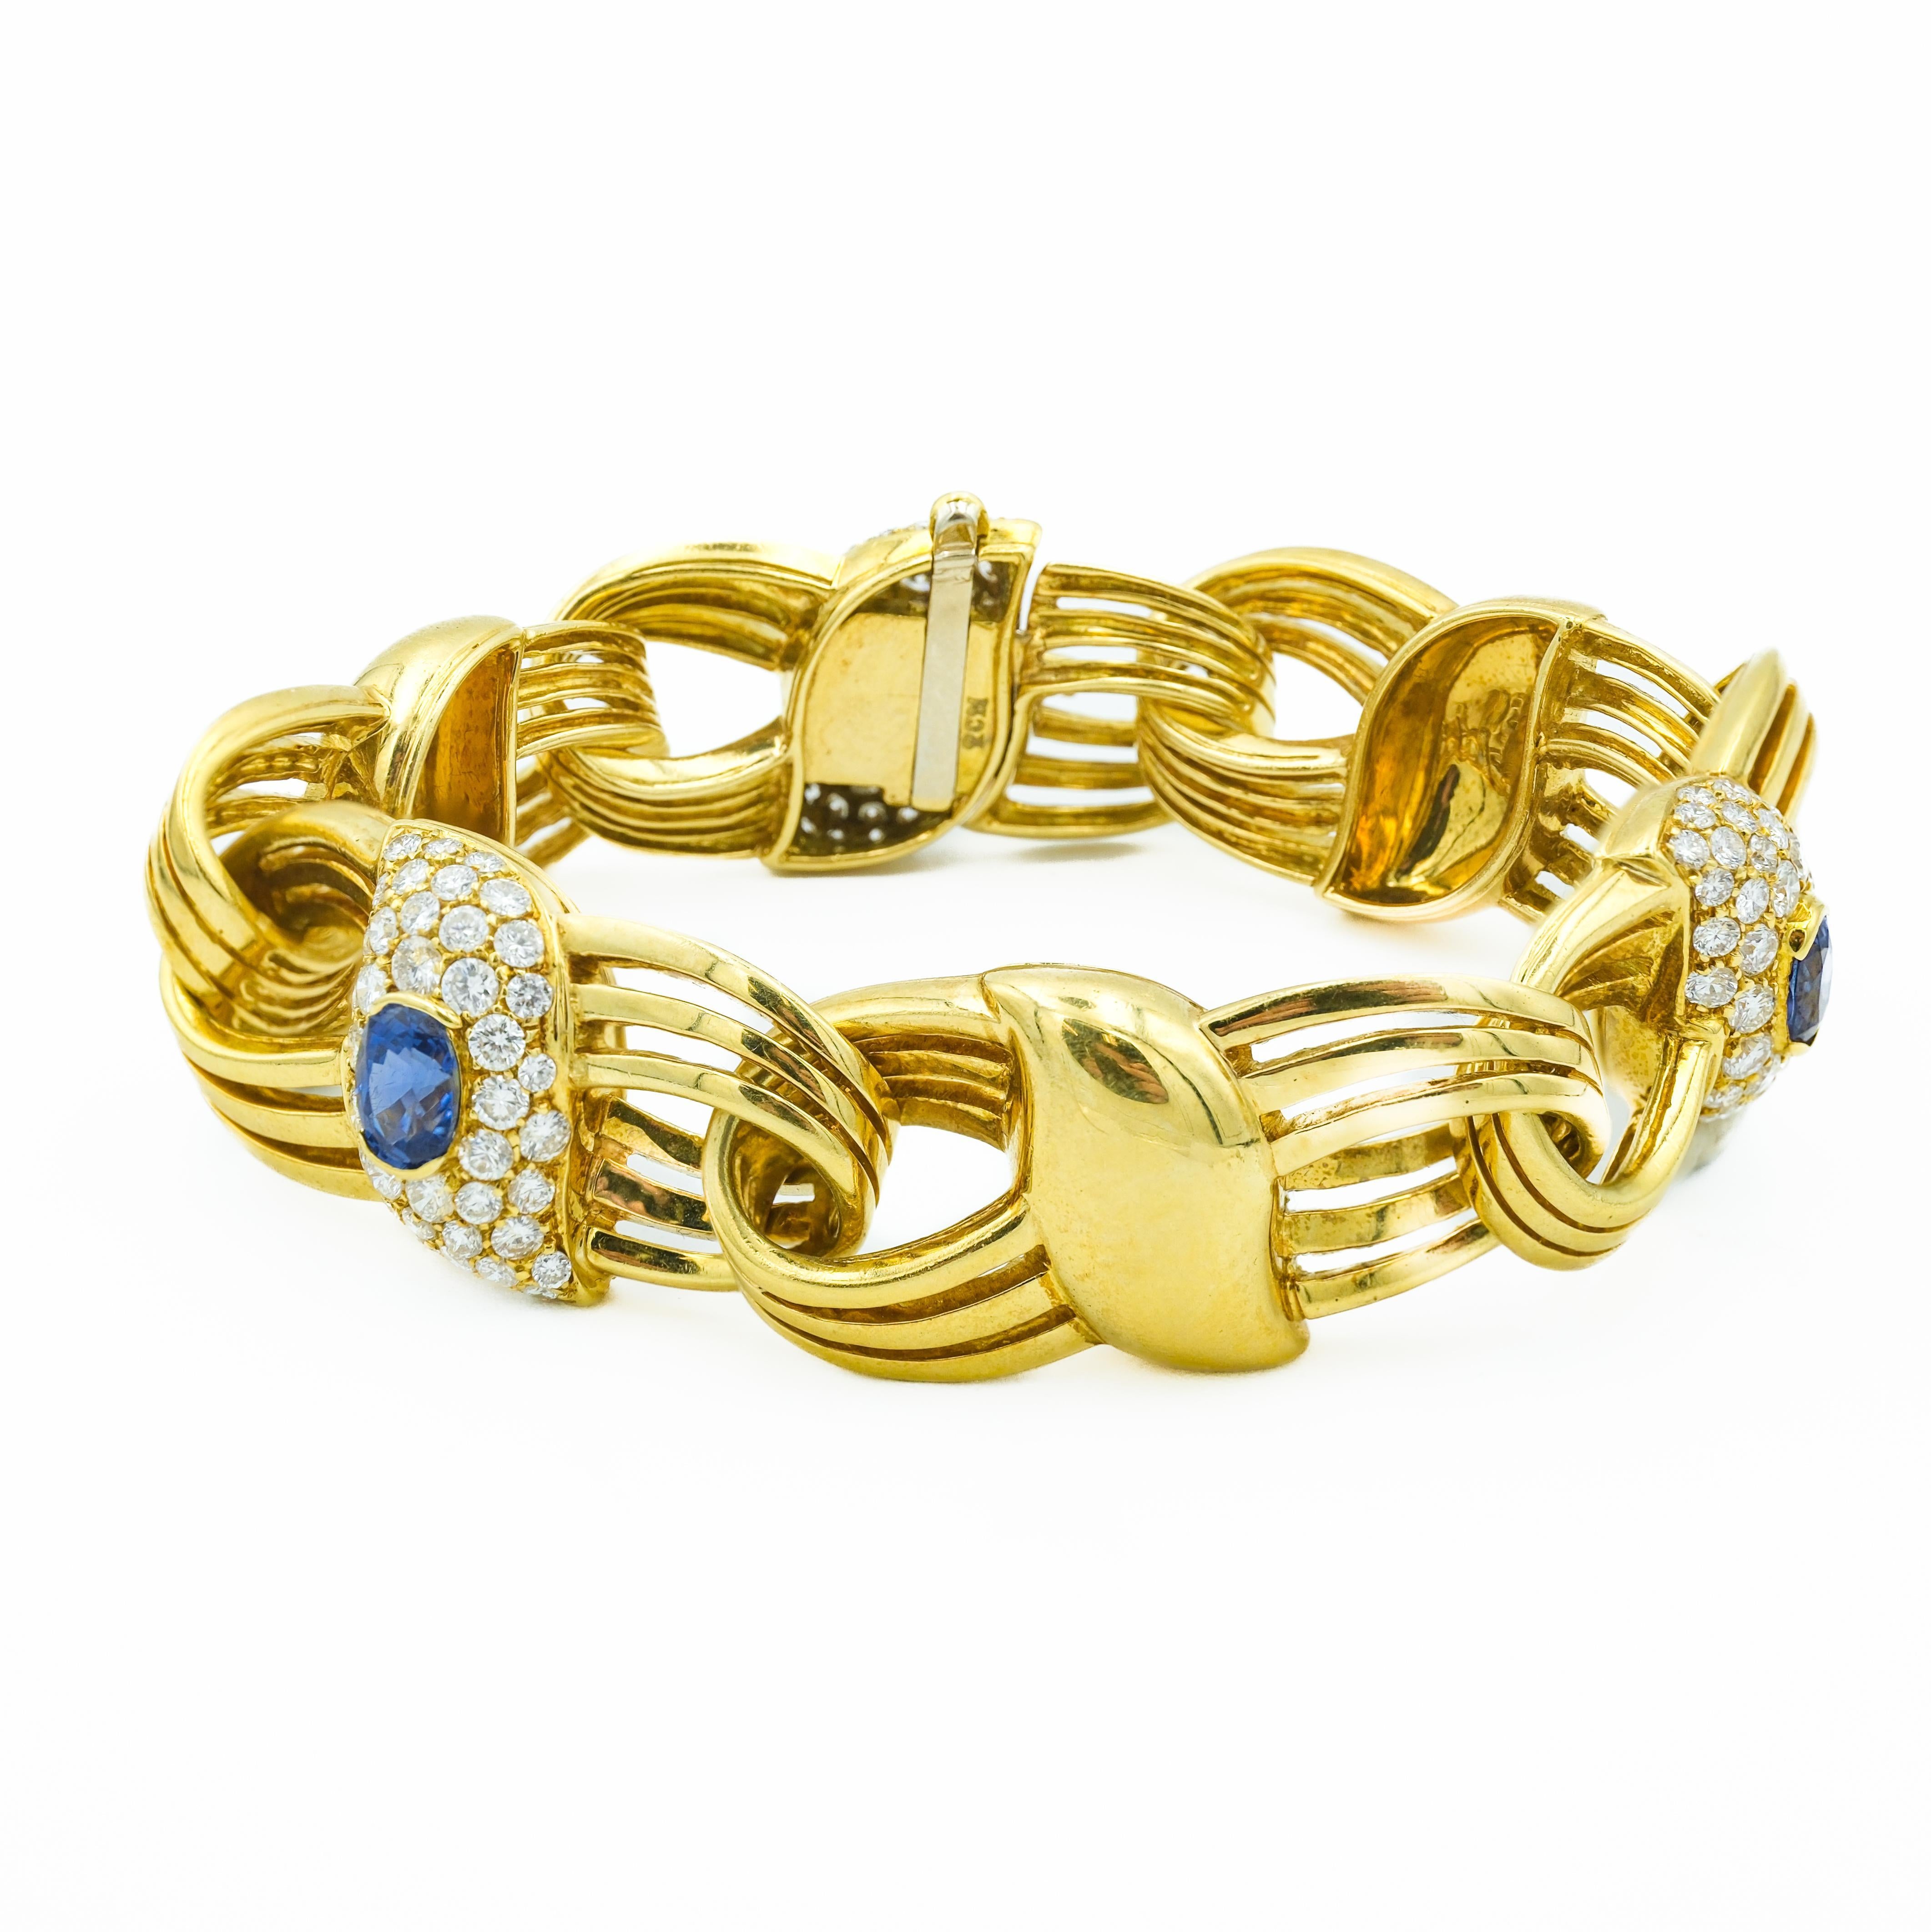 Dieses elegante Armband aus 18 Karat Gelbgold ist ein Zeugnis der Raffinesse des modernen Schmuckdesigns der 1970er Jahre. Es besteht aus einer Reihe kompliziert miteinander verbundener Elemente, die 2,53 Karat an  blauen Saphiren und 3,44 Karat